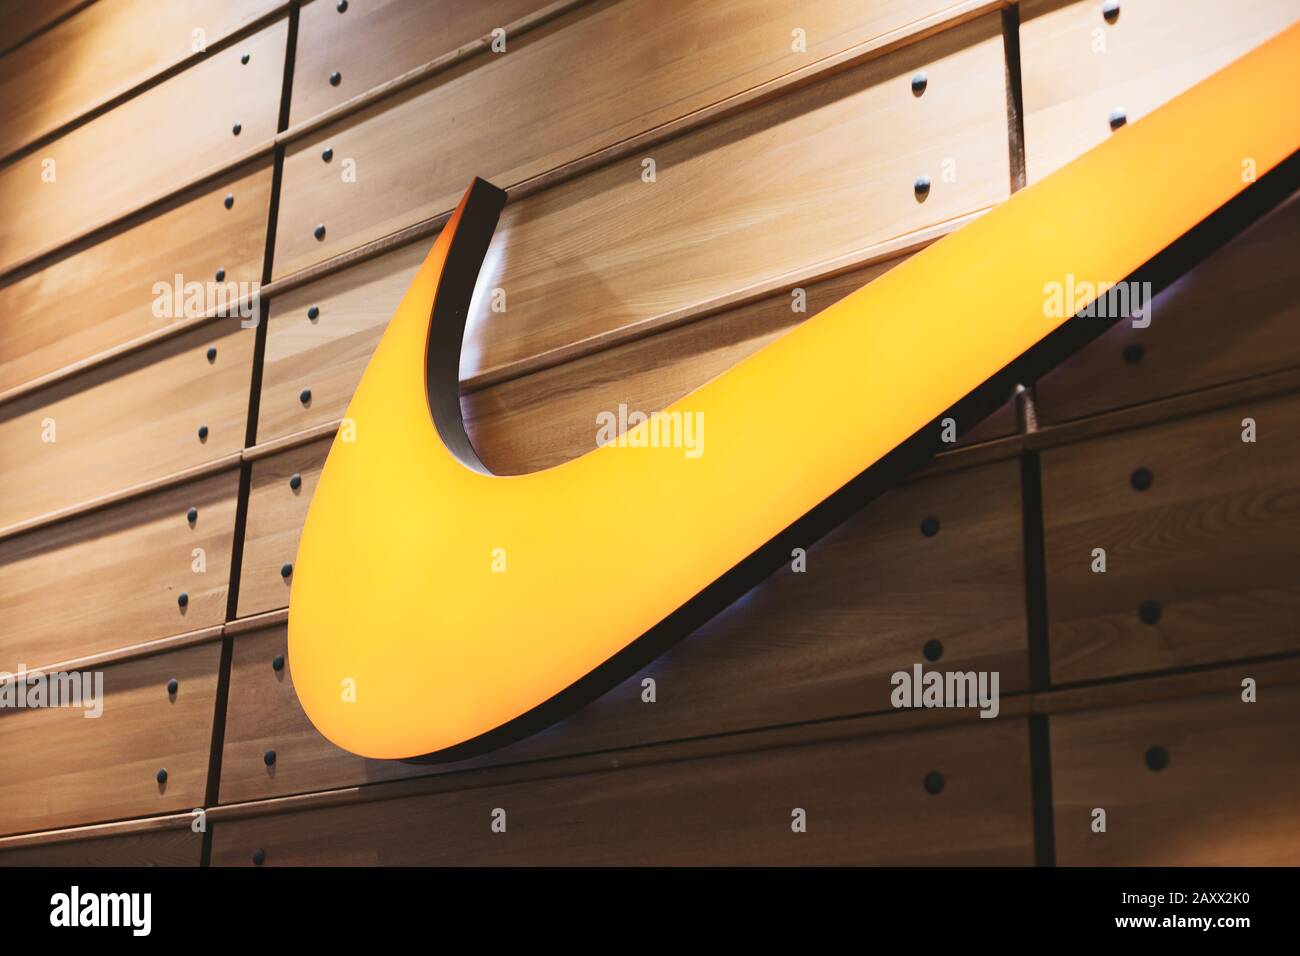 27 novembre 2019, Émirats arabes Unis, Dubai Mall : gros plan du logo Nike dans le magasin de vêtements de sport Banque D'Images